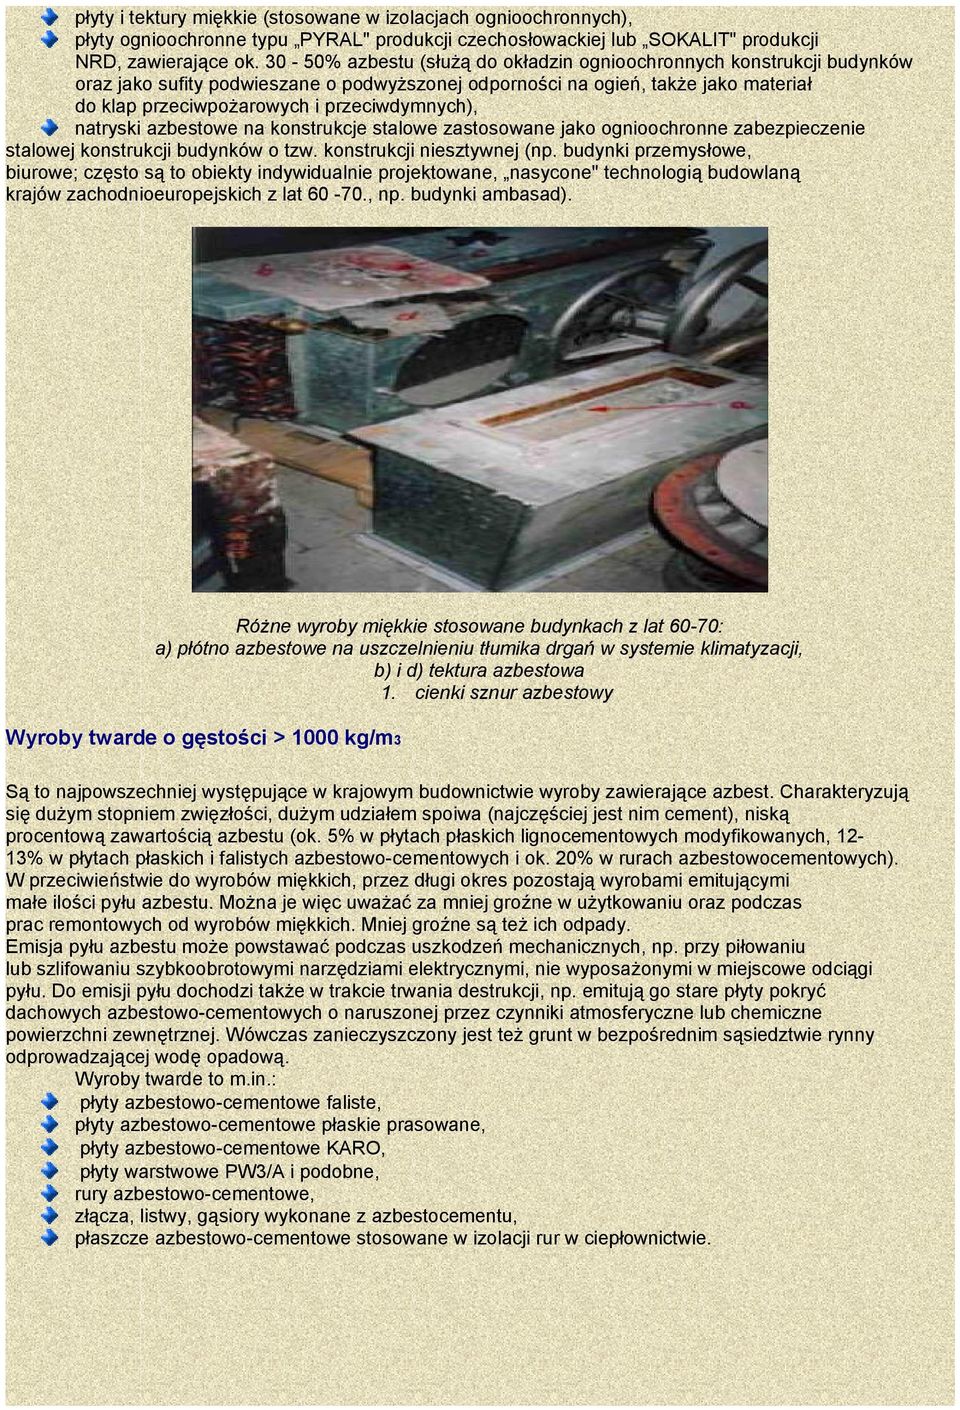 przeciwdymnych), natryski azbestowe na konstrukcje stalowe zastosowane jako ognioochronne zabezpieczenie stalowej konstrukcji budynków o tzw. konstrukcji niesztywnej (np.